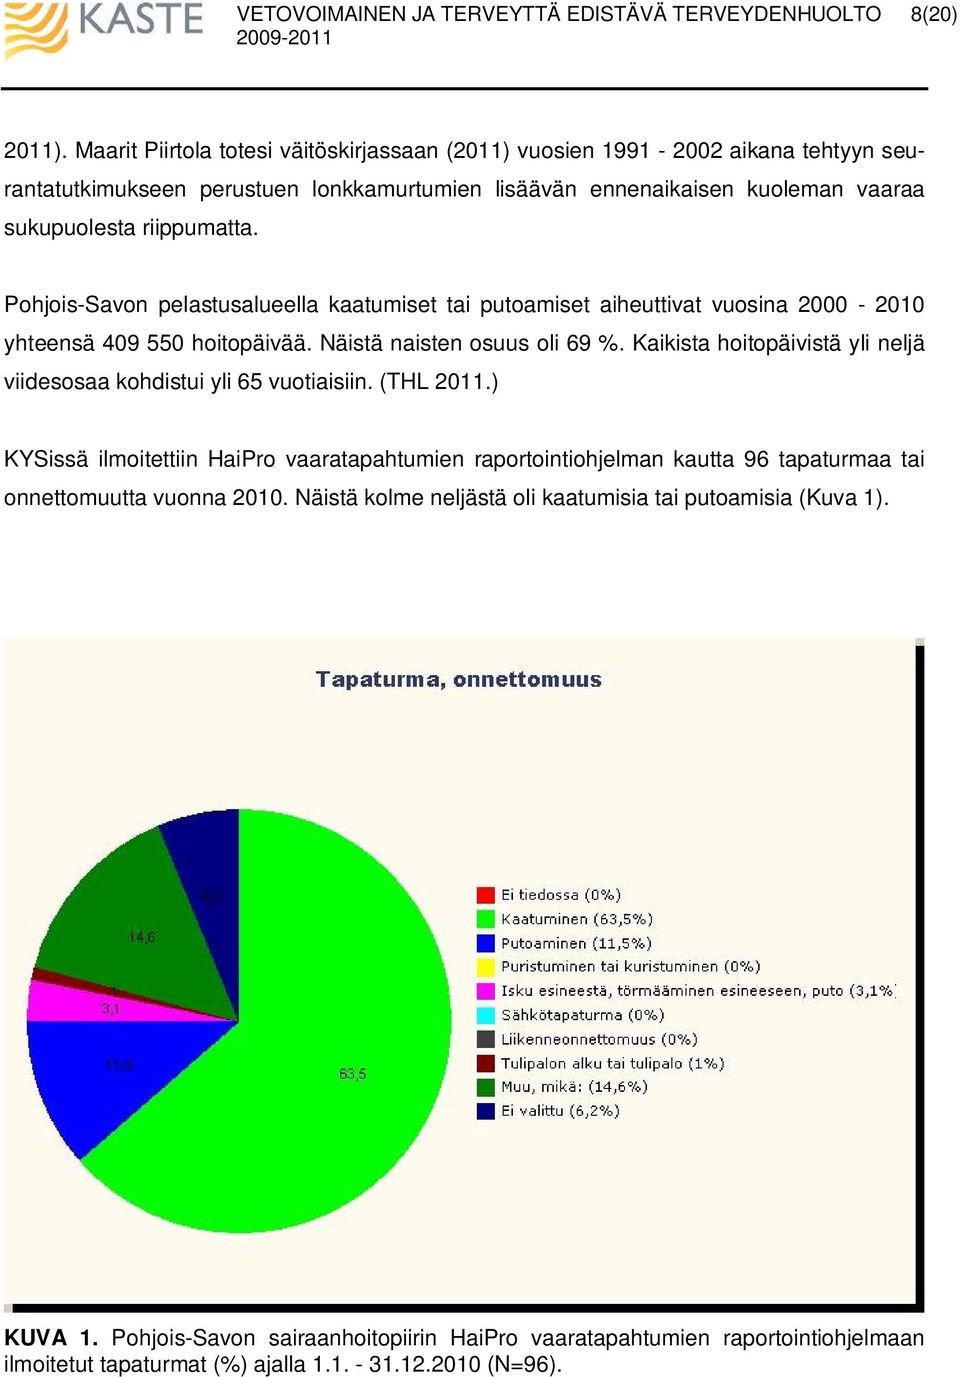 Pohjois-Savon pelastusalueella kaatumiset tai putoamiset aiheuttivat vuosina 2000-2010 yhteensä 409 550 hoitopäivää. Näistä naisten osuus oli 69 %.